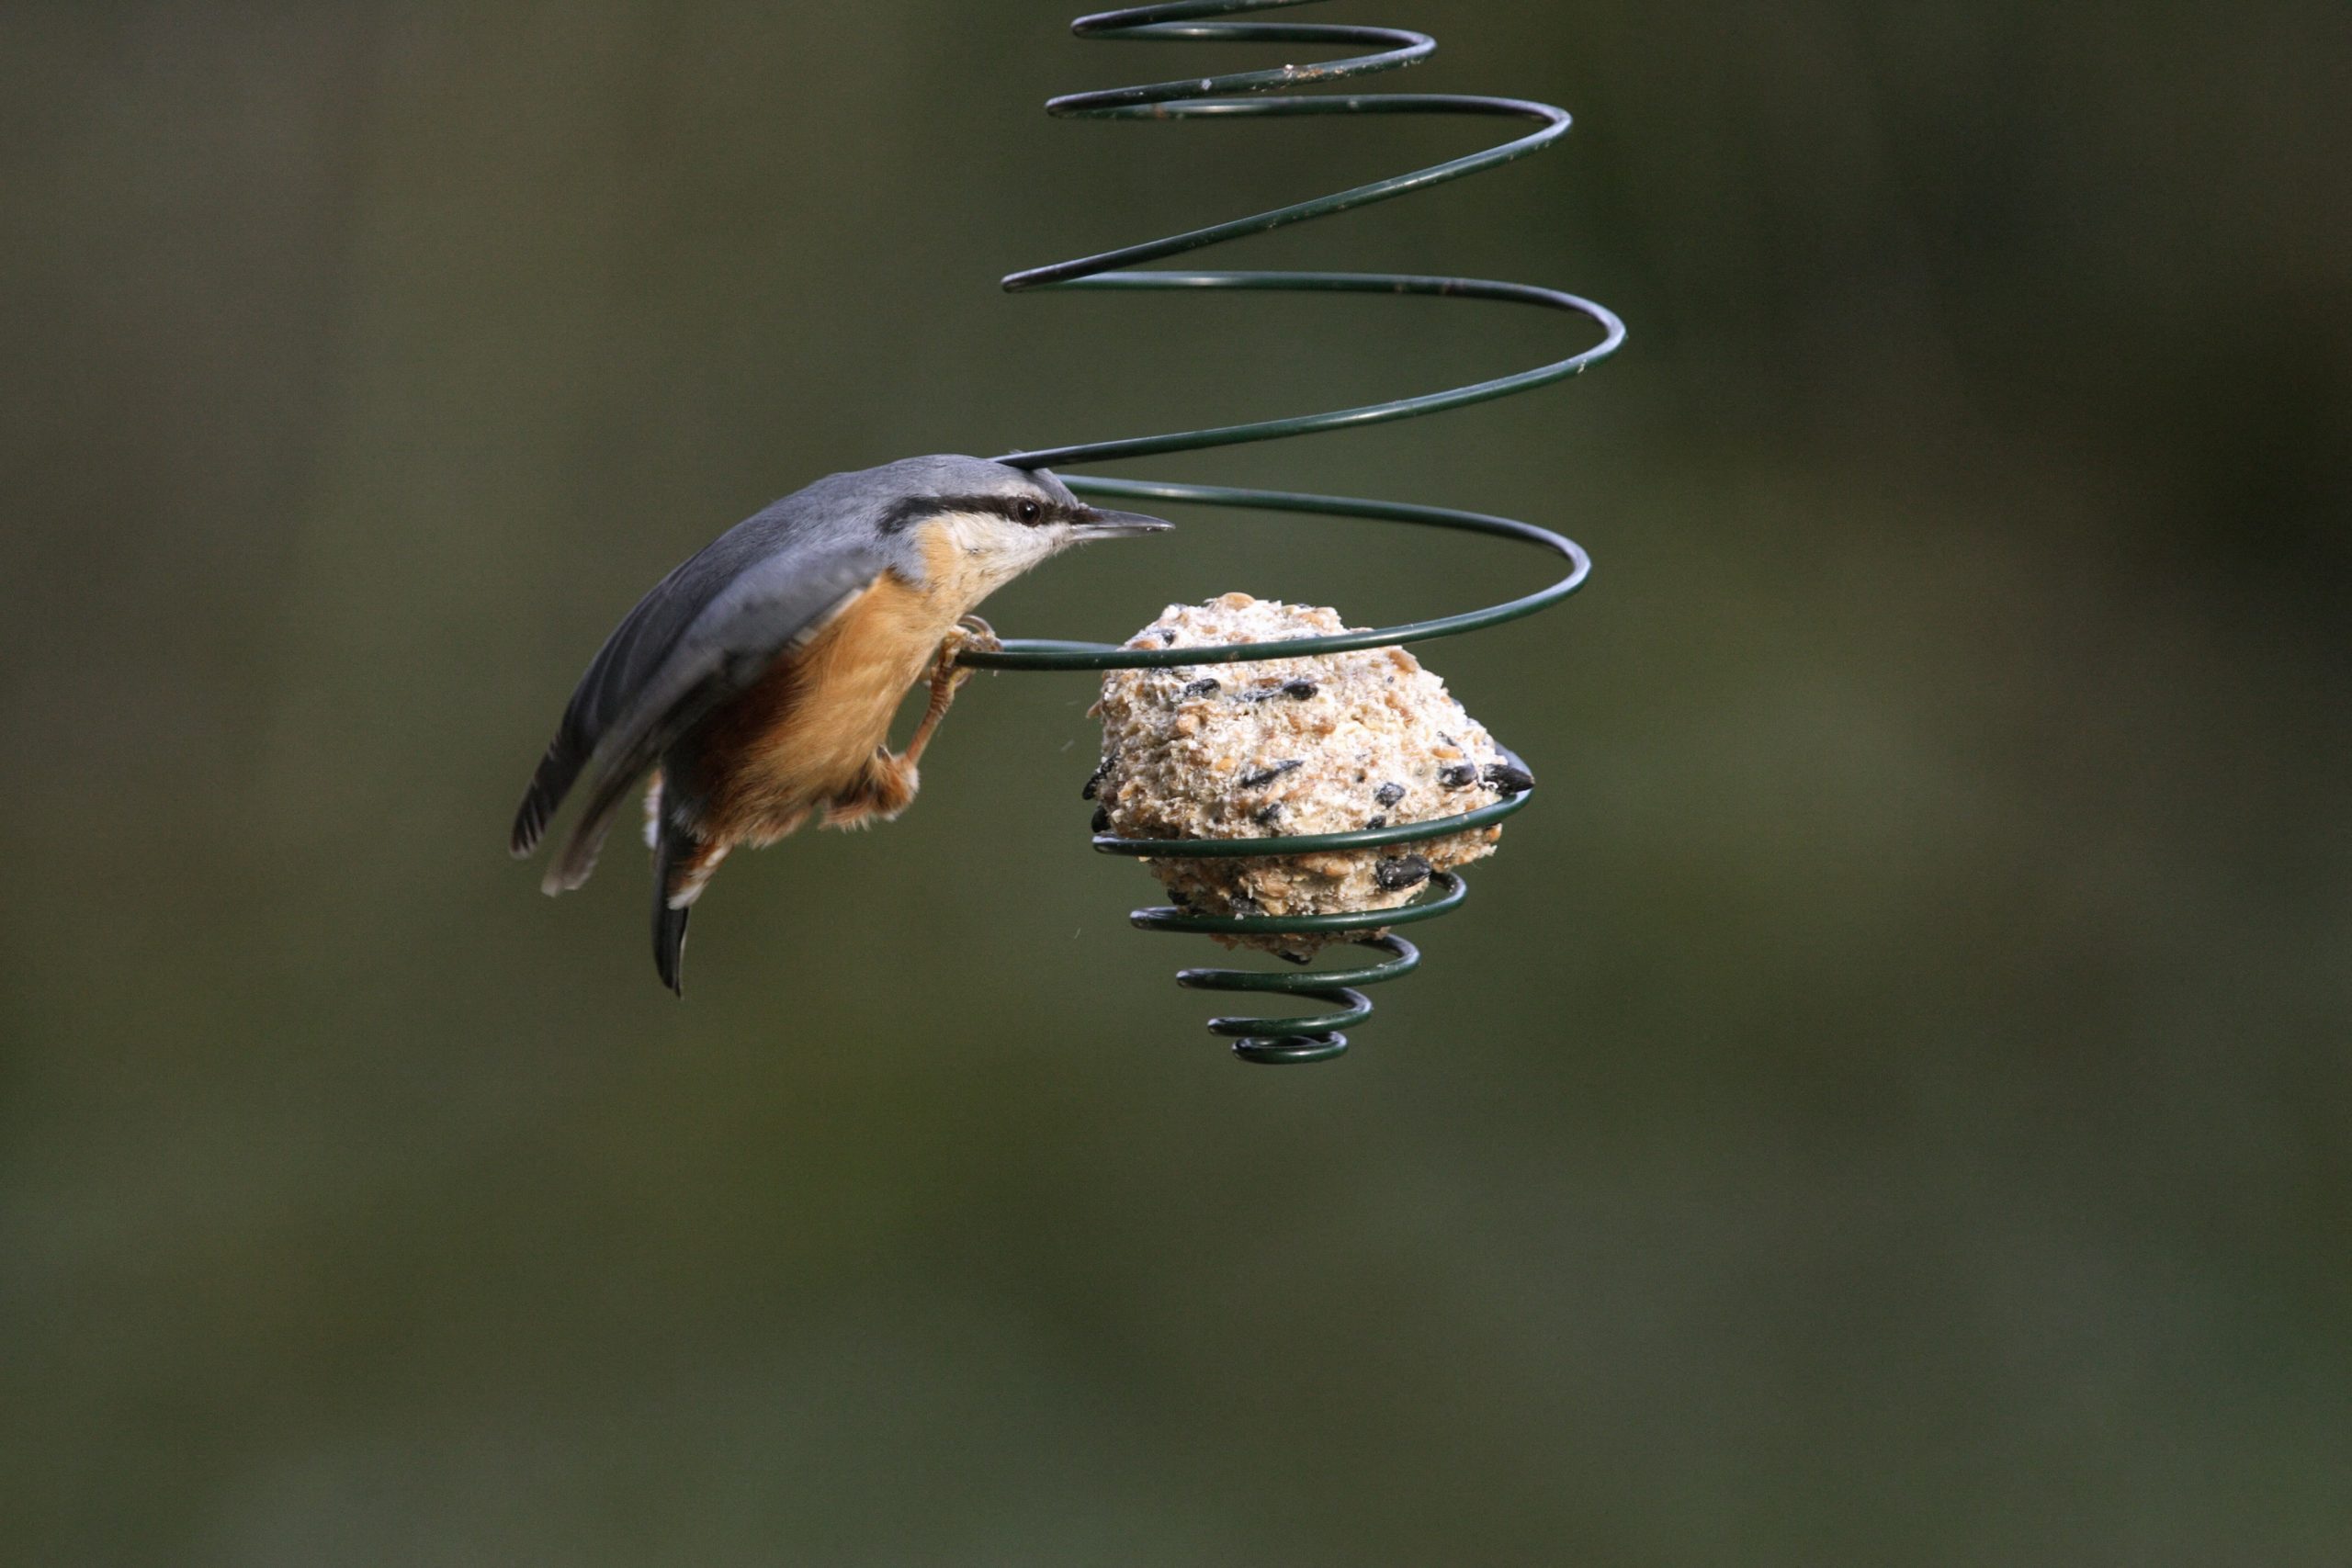 Nourrir les oiseaux en hiver : comment fabriquer des boules de graisse